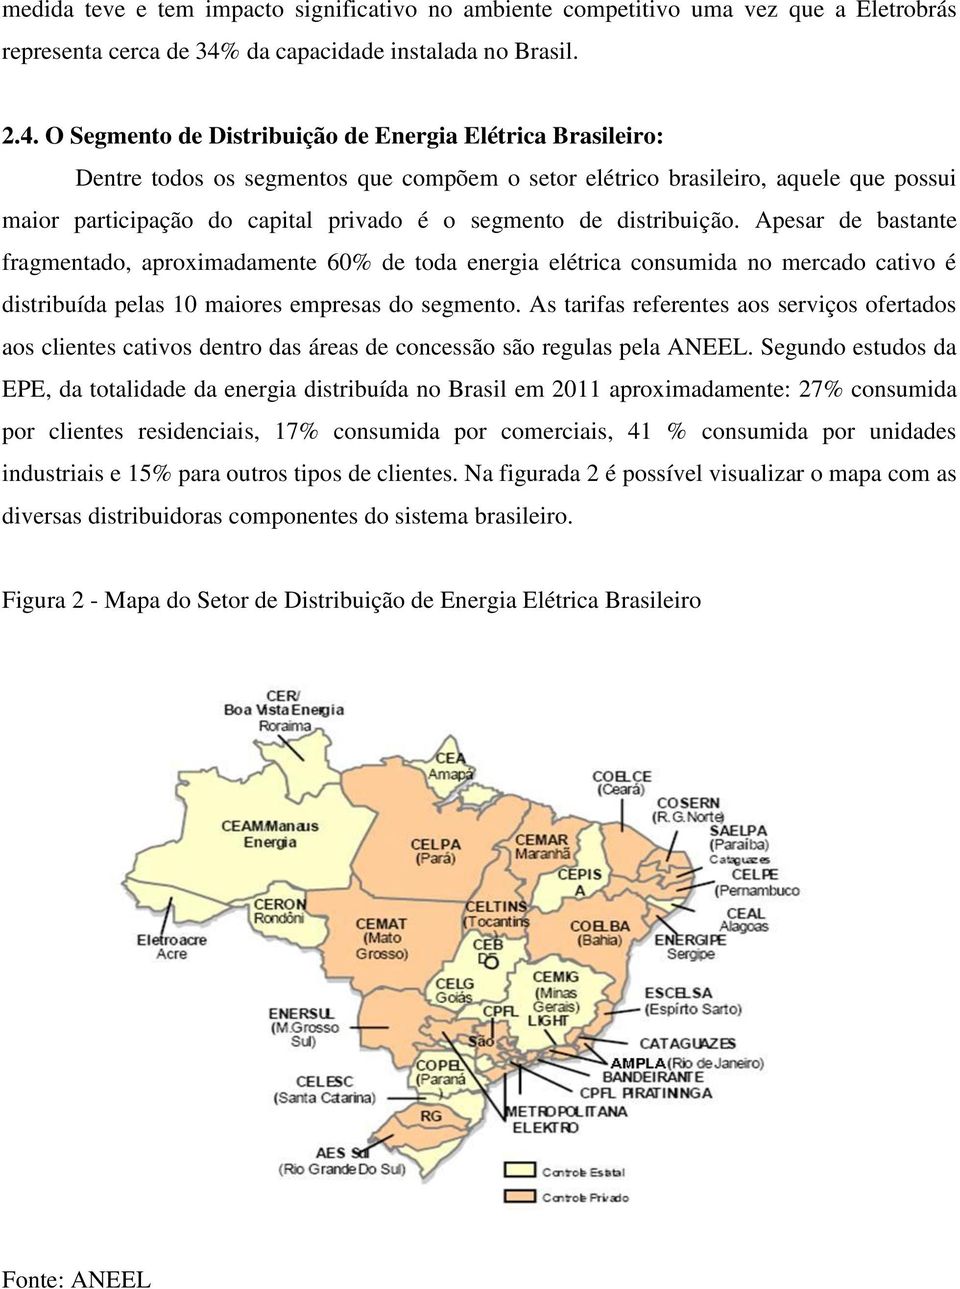 O Segmento de Distribuição de Energia Elétrica Brasileiro: Dentre todos os segmentos que compõem o setor elétrico brasileiro, aquele que possui maior participação do capital privado é o segmento de